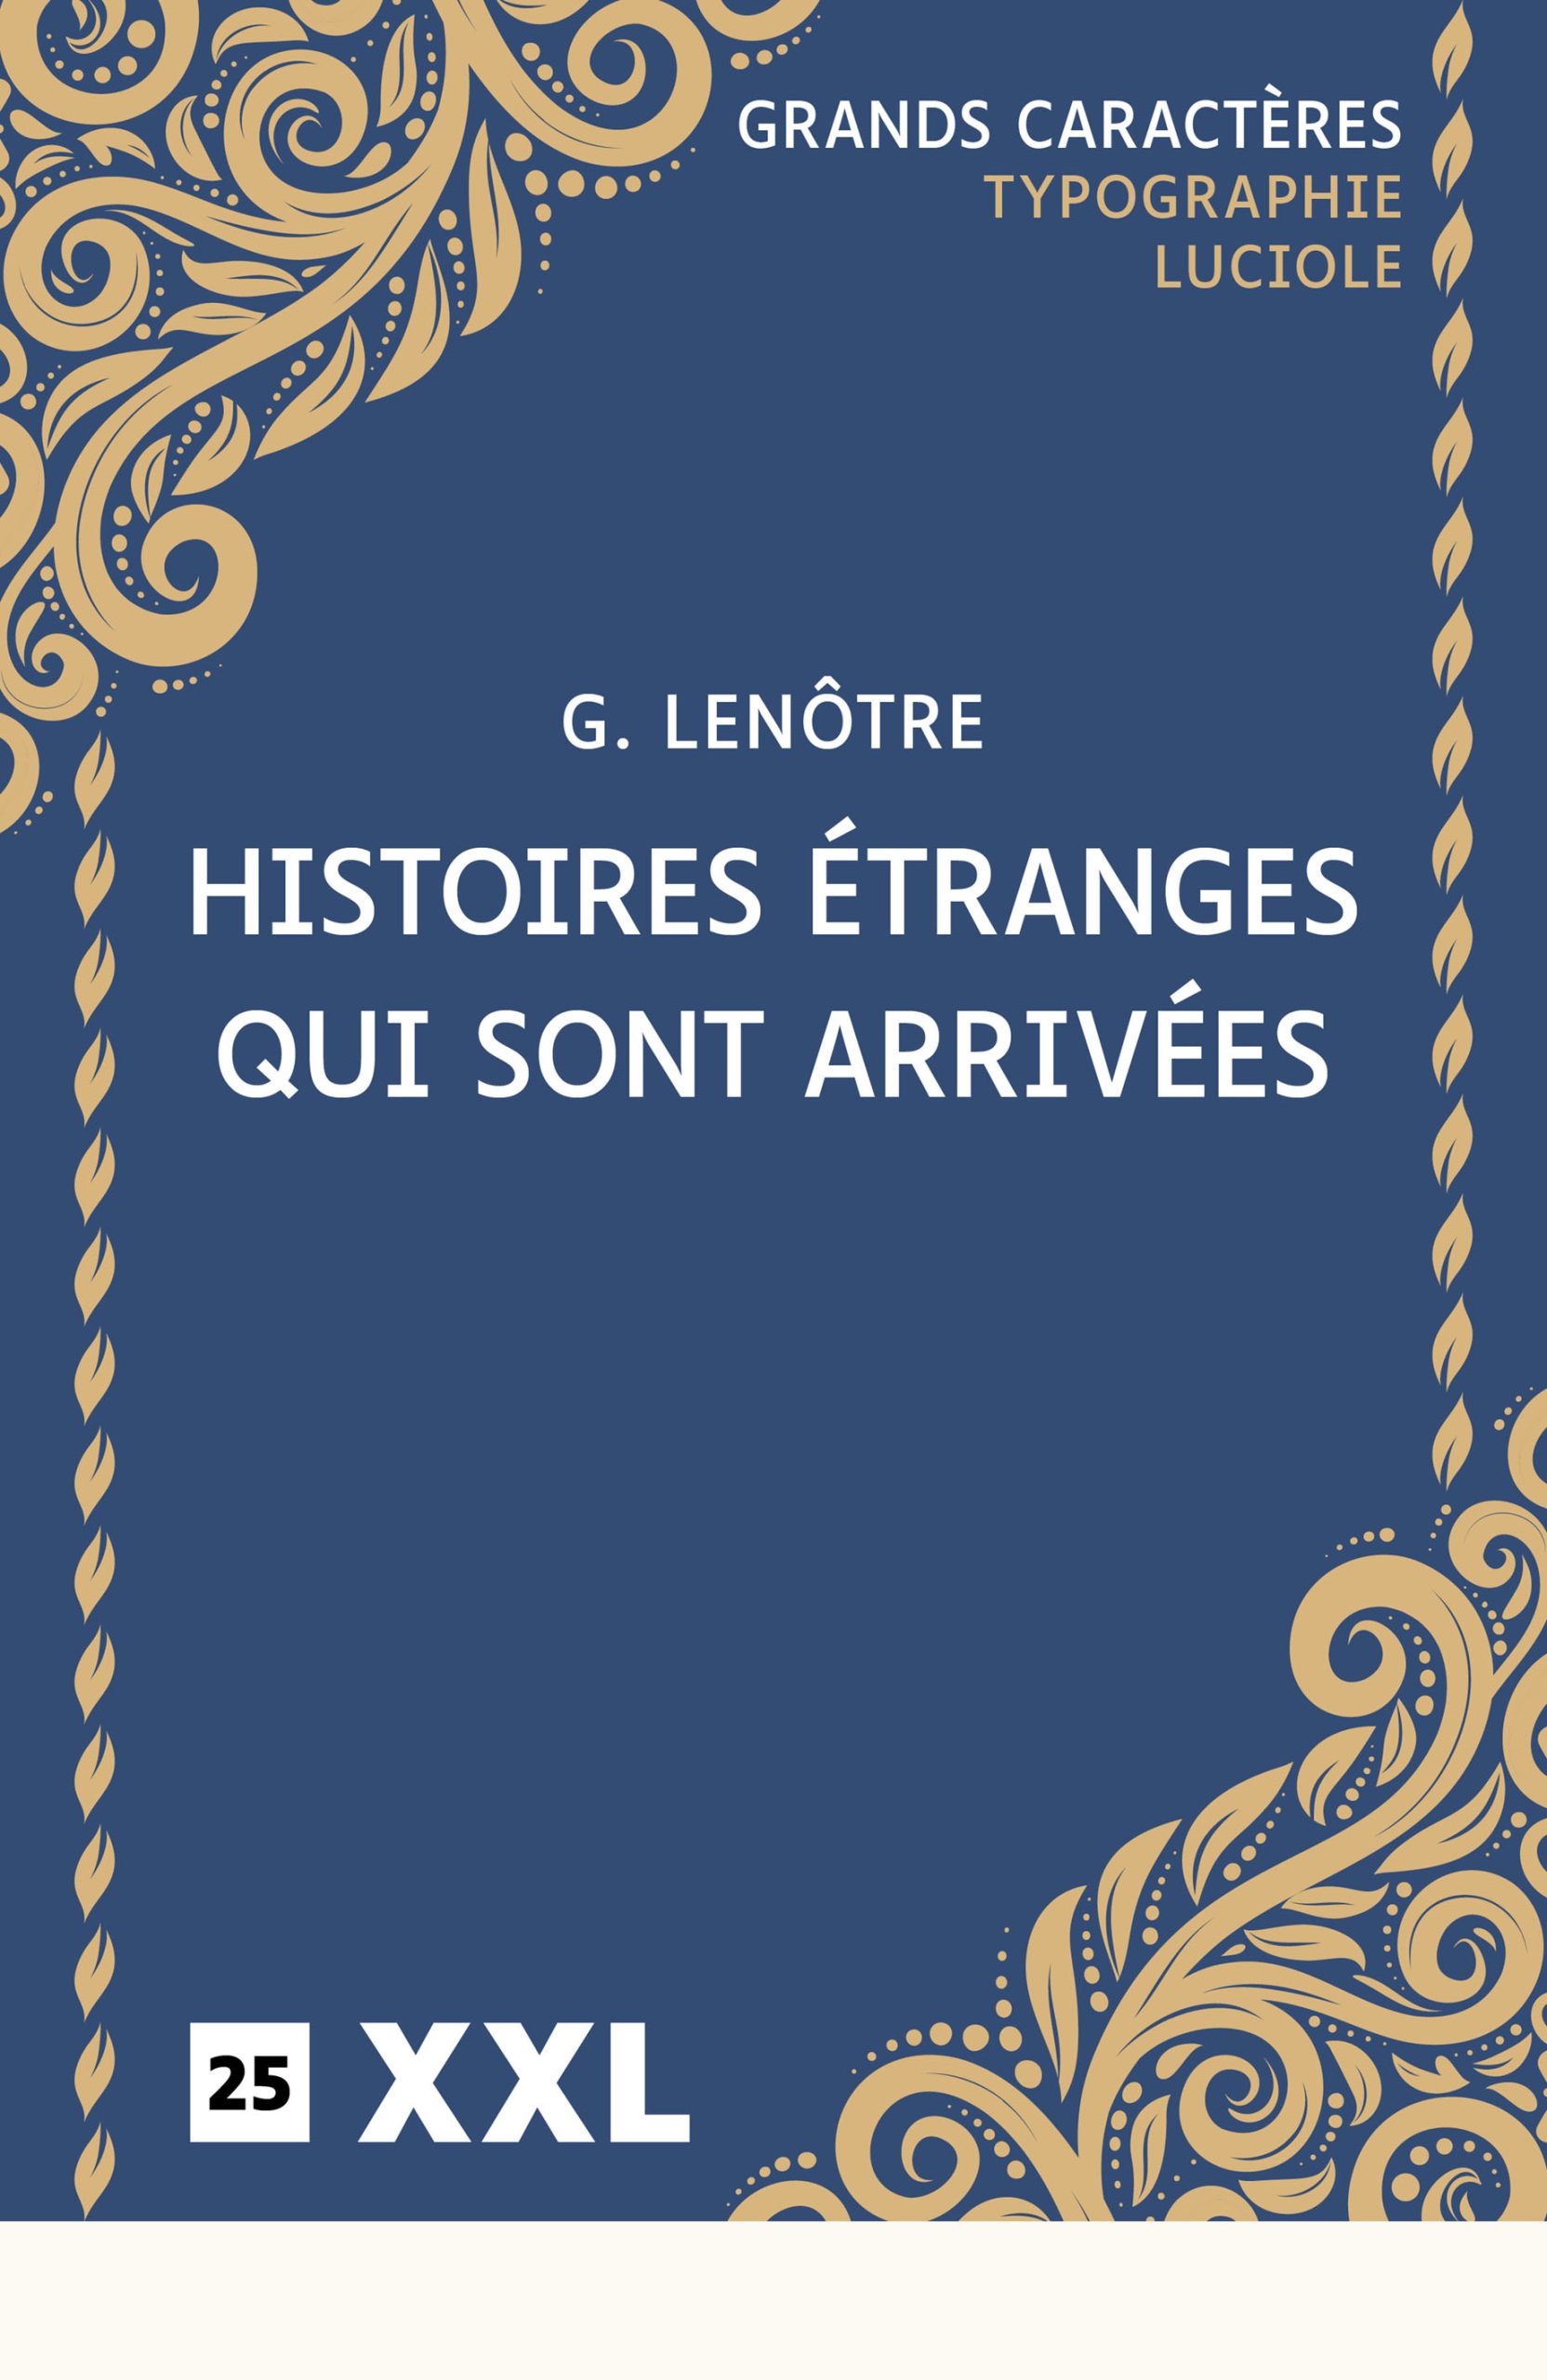 Couverture du livre en grands caractères - gros caractères - Histoires étranges qui sont arrivées de G. Lenôtre